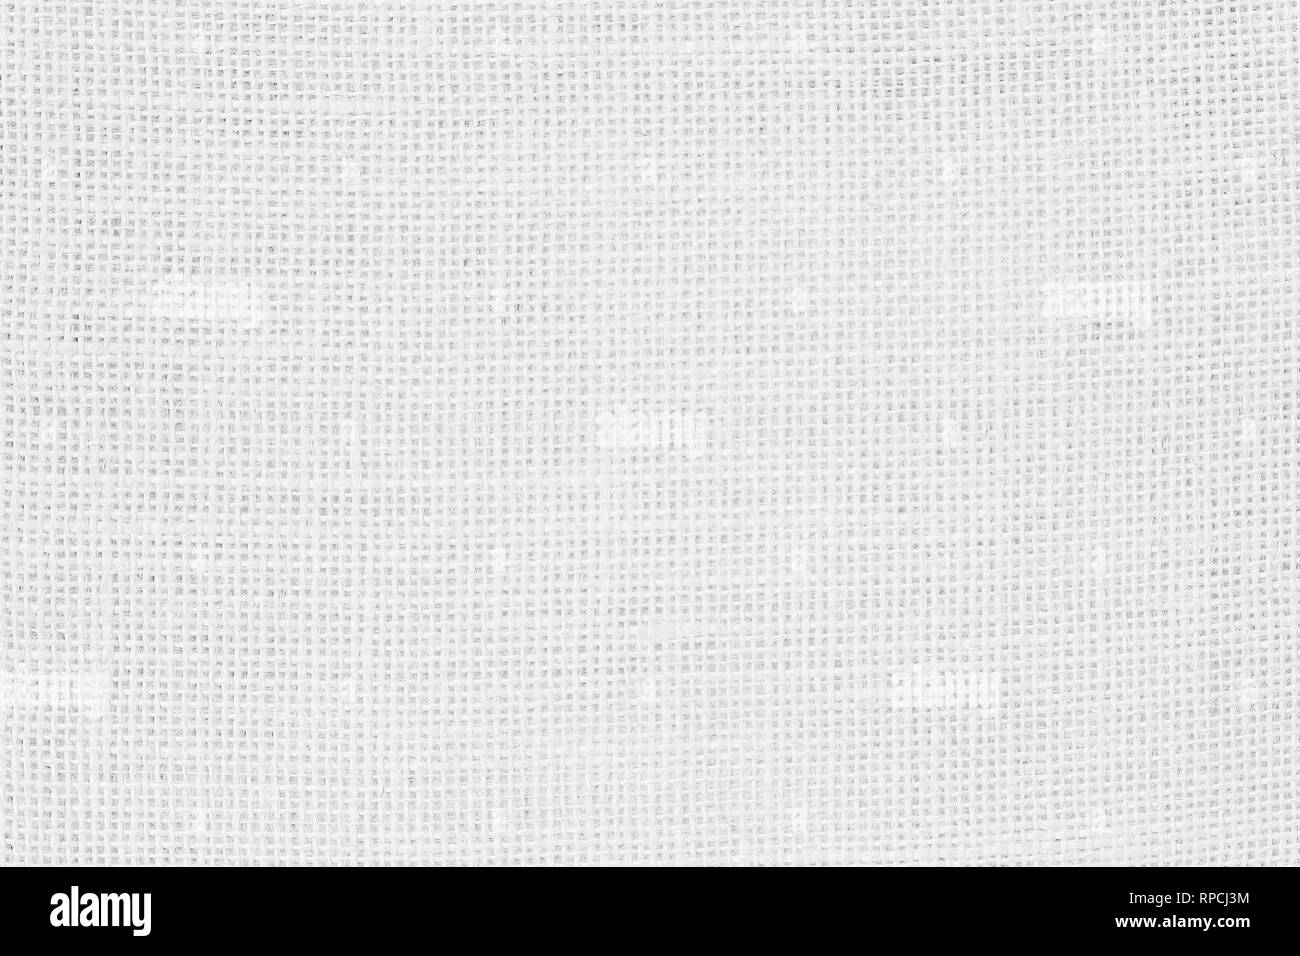 Résumé ou un sac de jute ou de chanvre sac tissu texture background. Fond d'écran de wale artistique de la toile de lin. Couverture ou de Rideau motif coton wi Banque D'Images